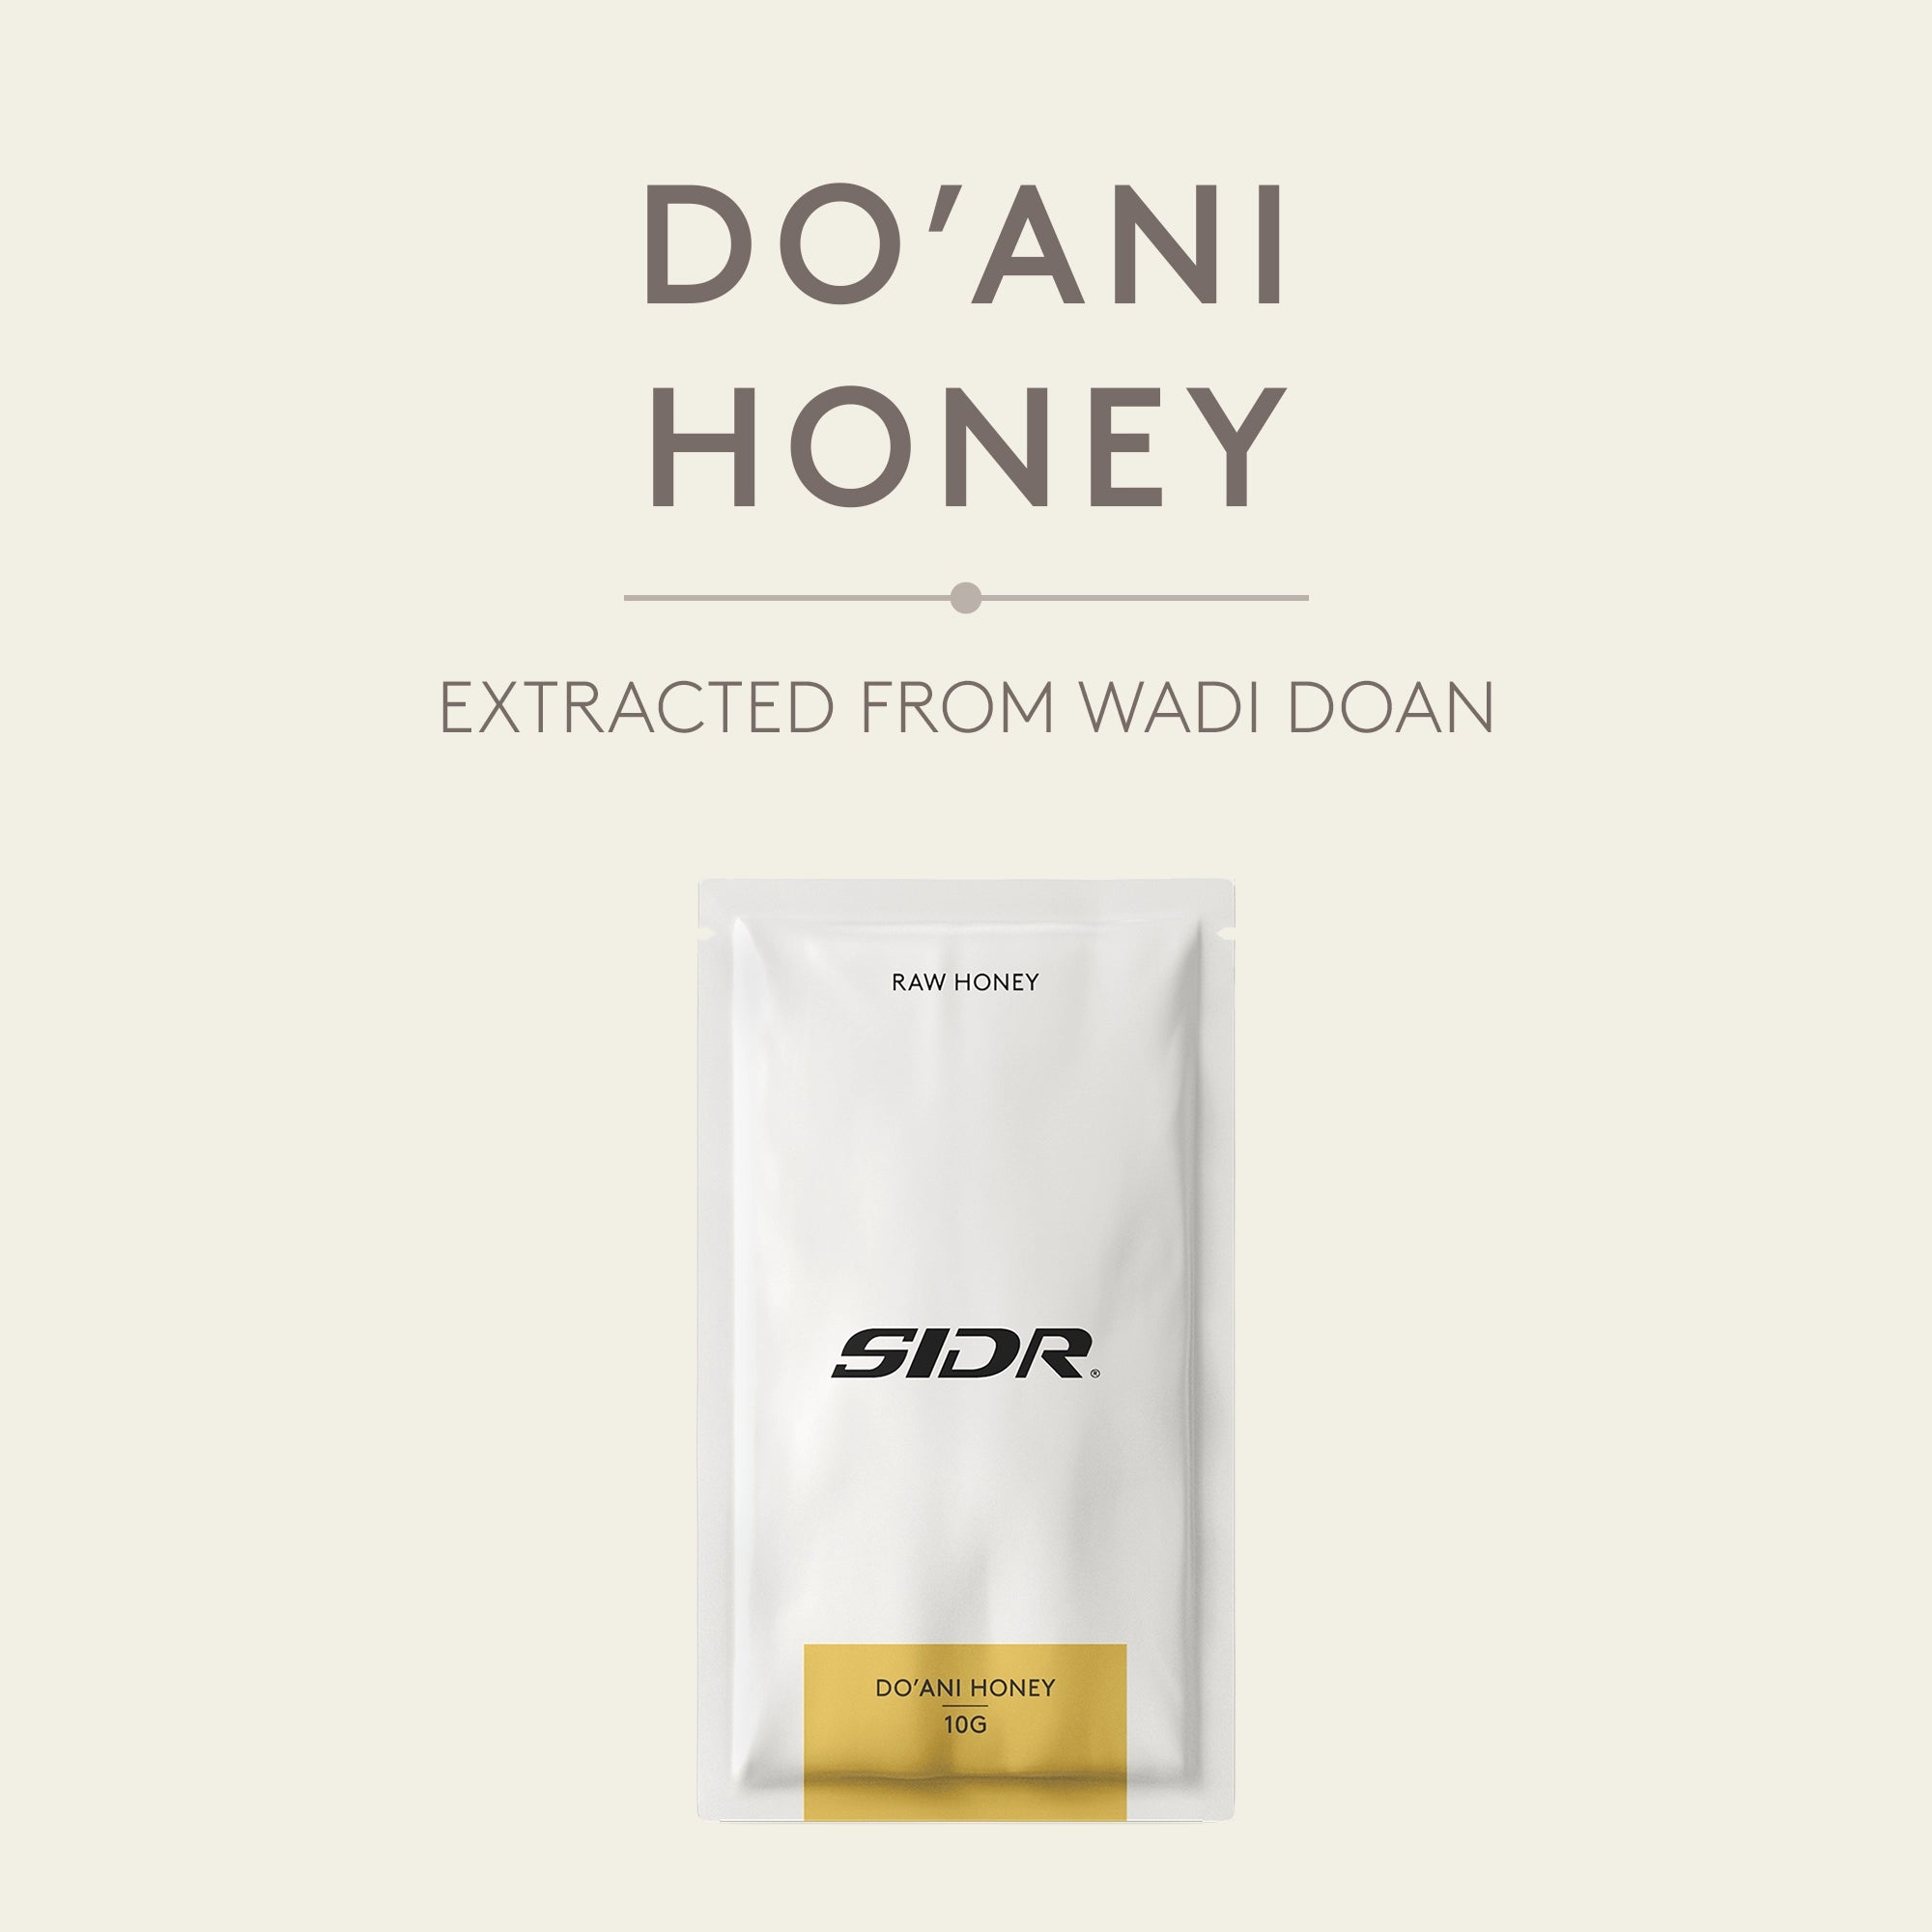 sidr doani honey packet from wadi doan